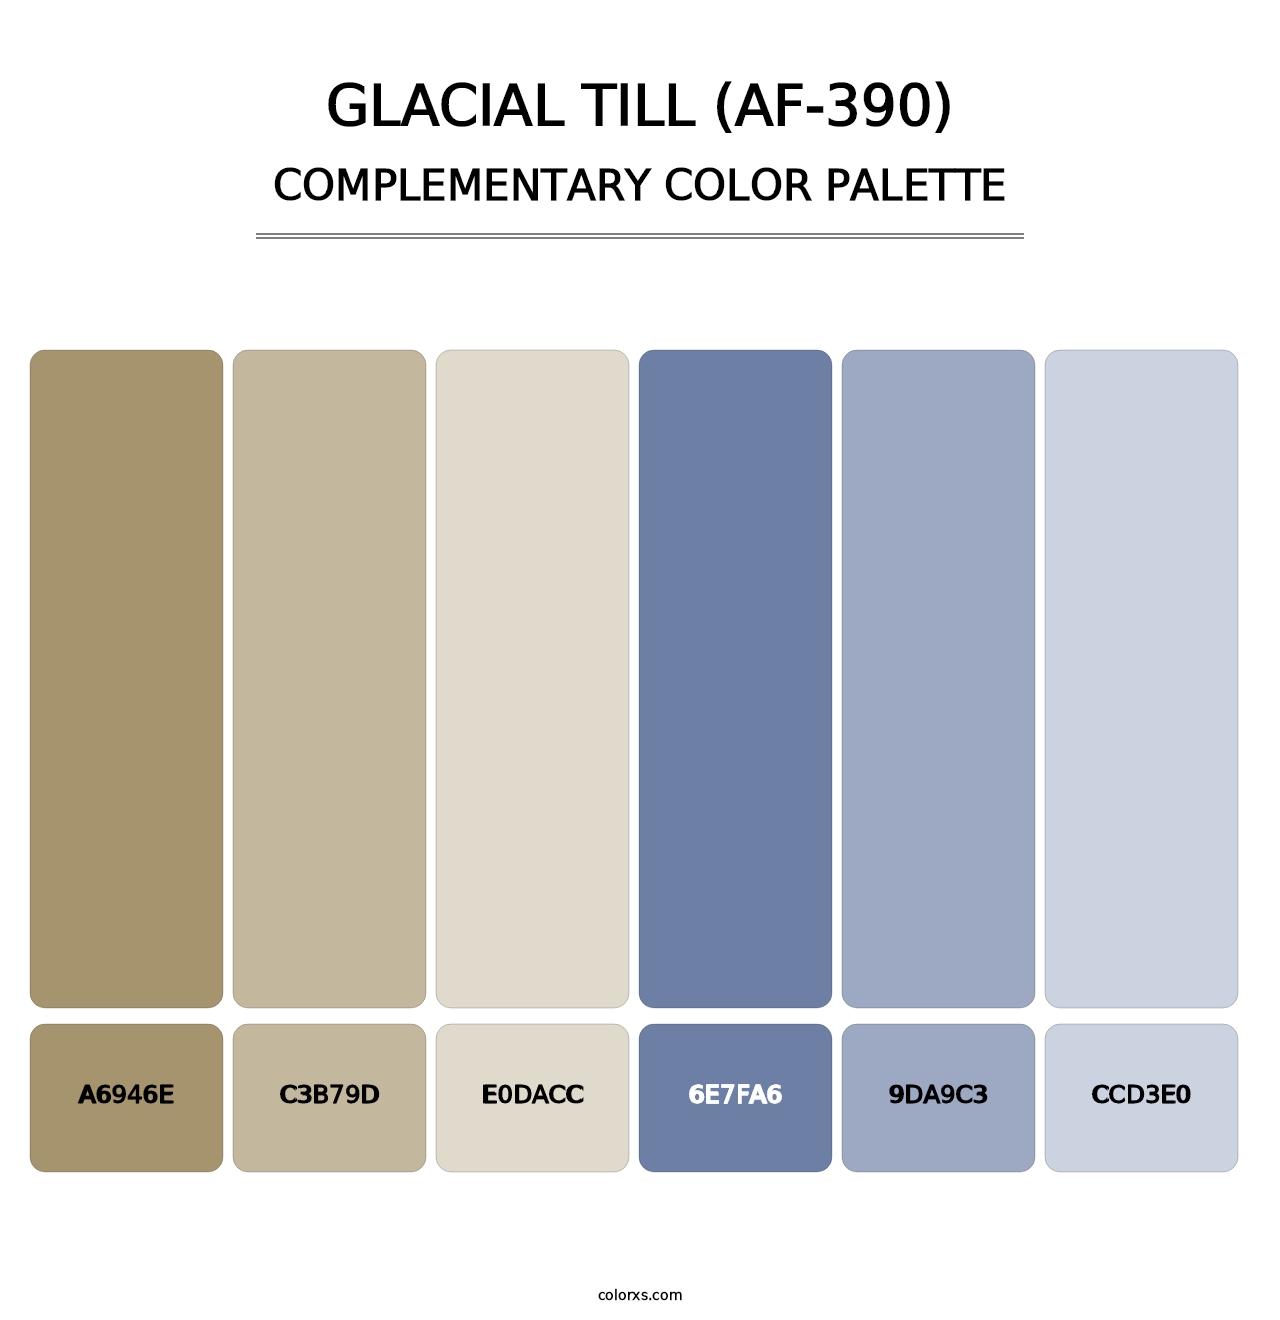 Glacial Till (AF-390) - Complementary Color Palette